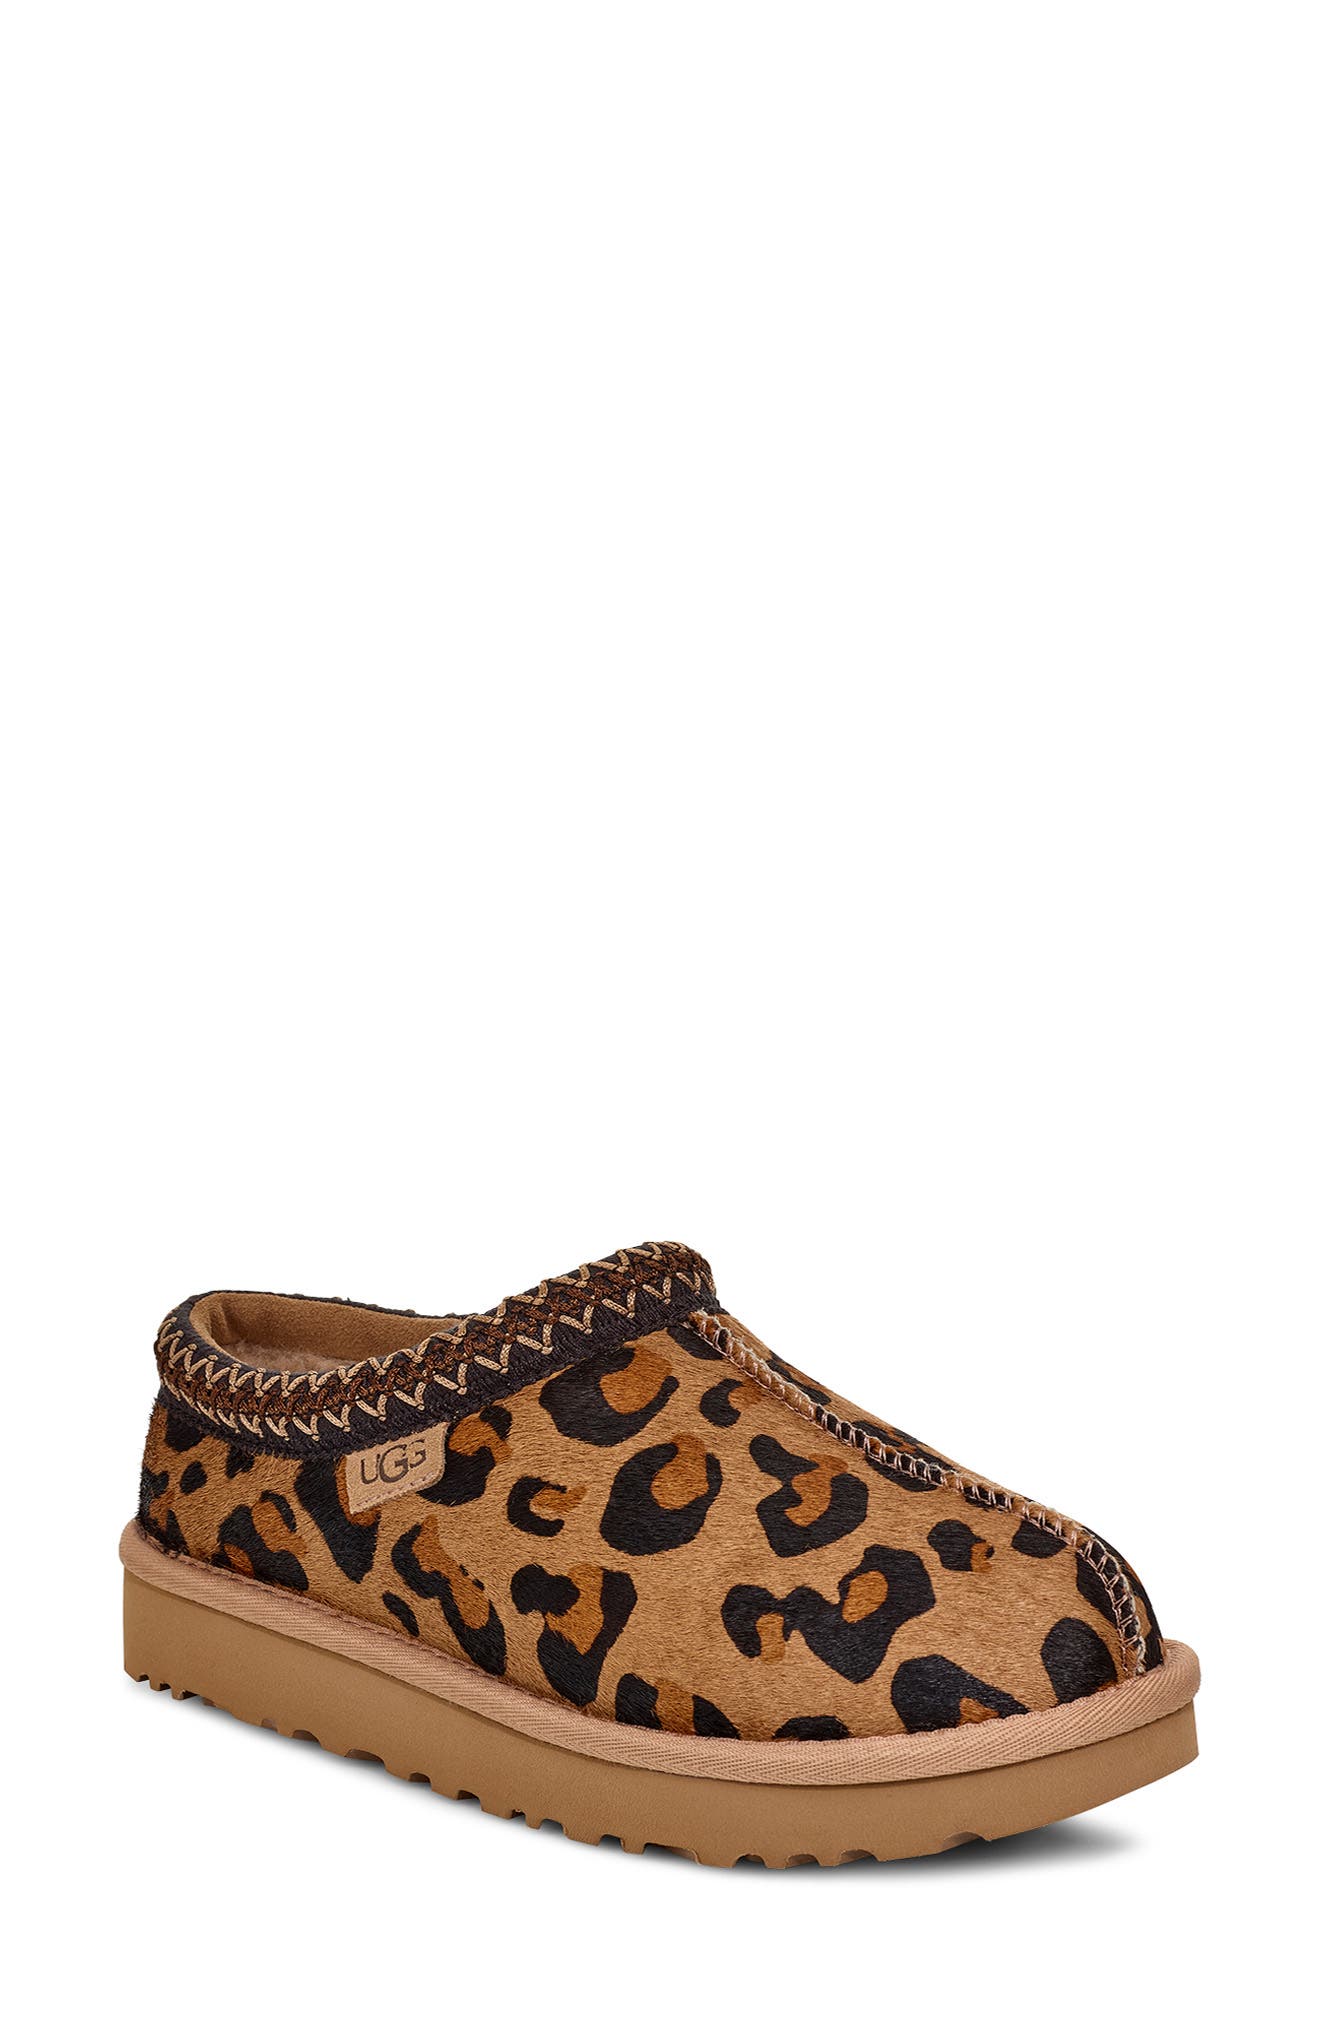 ugg cheetah sneakers